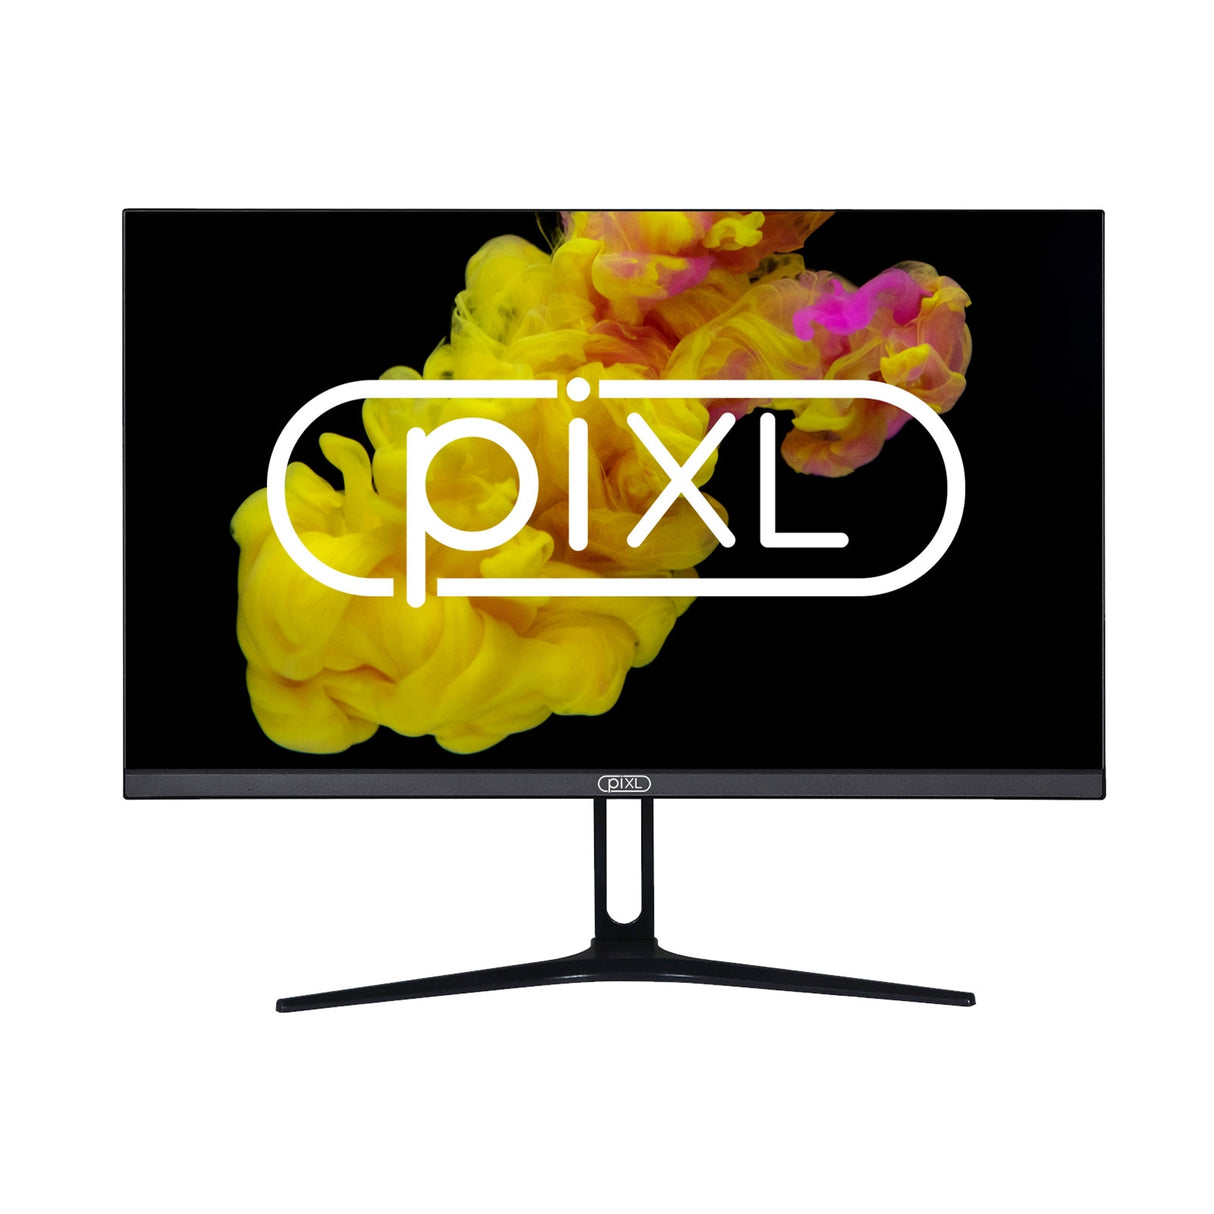 piXL PX24IVHF Moniteur sans cadre 24 pouces, panneau LCD IPS large, temps de réponse de 5 ms, taux de rafraîchissement de 75 Hz, Full HD 1920 x 1080, VGA, HDMI, bloc d'alimentation interne, prise en charge de 16,7 millions de couleurs, finition noire